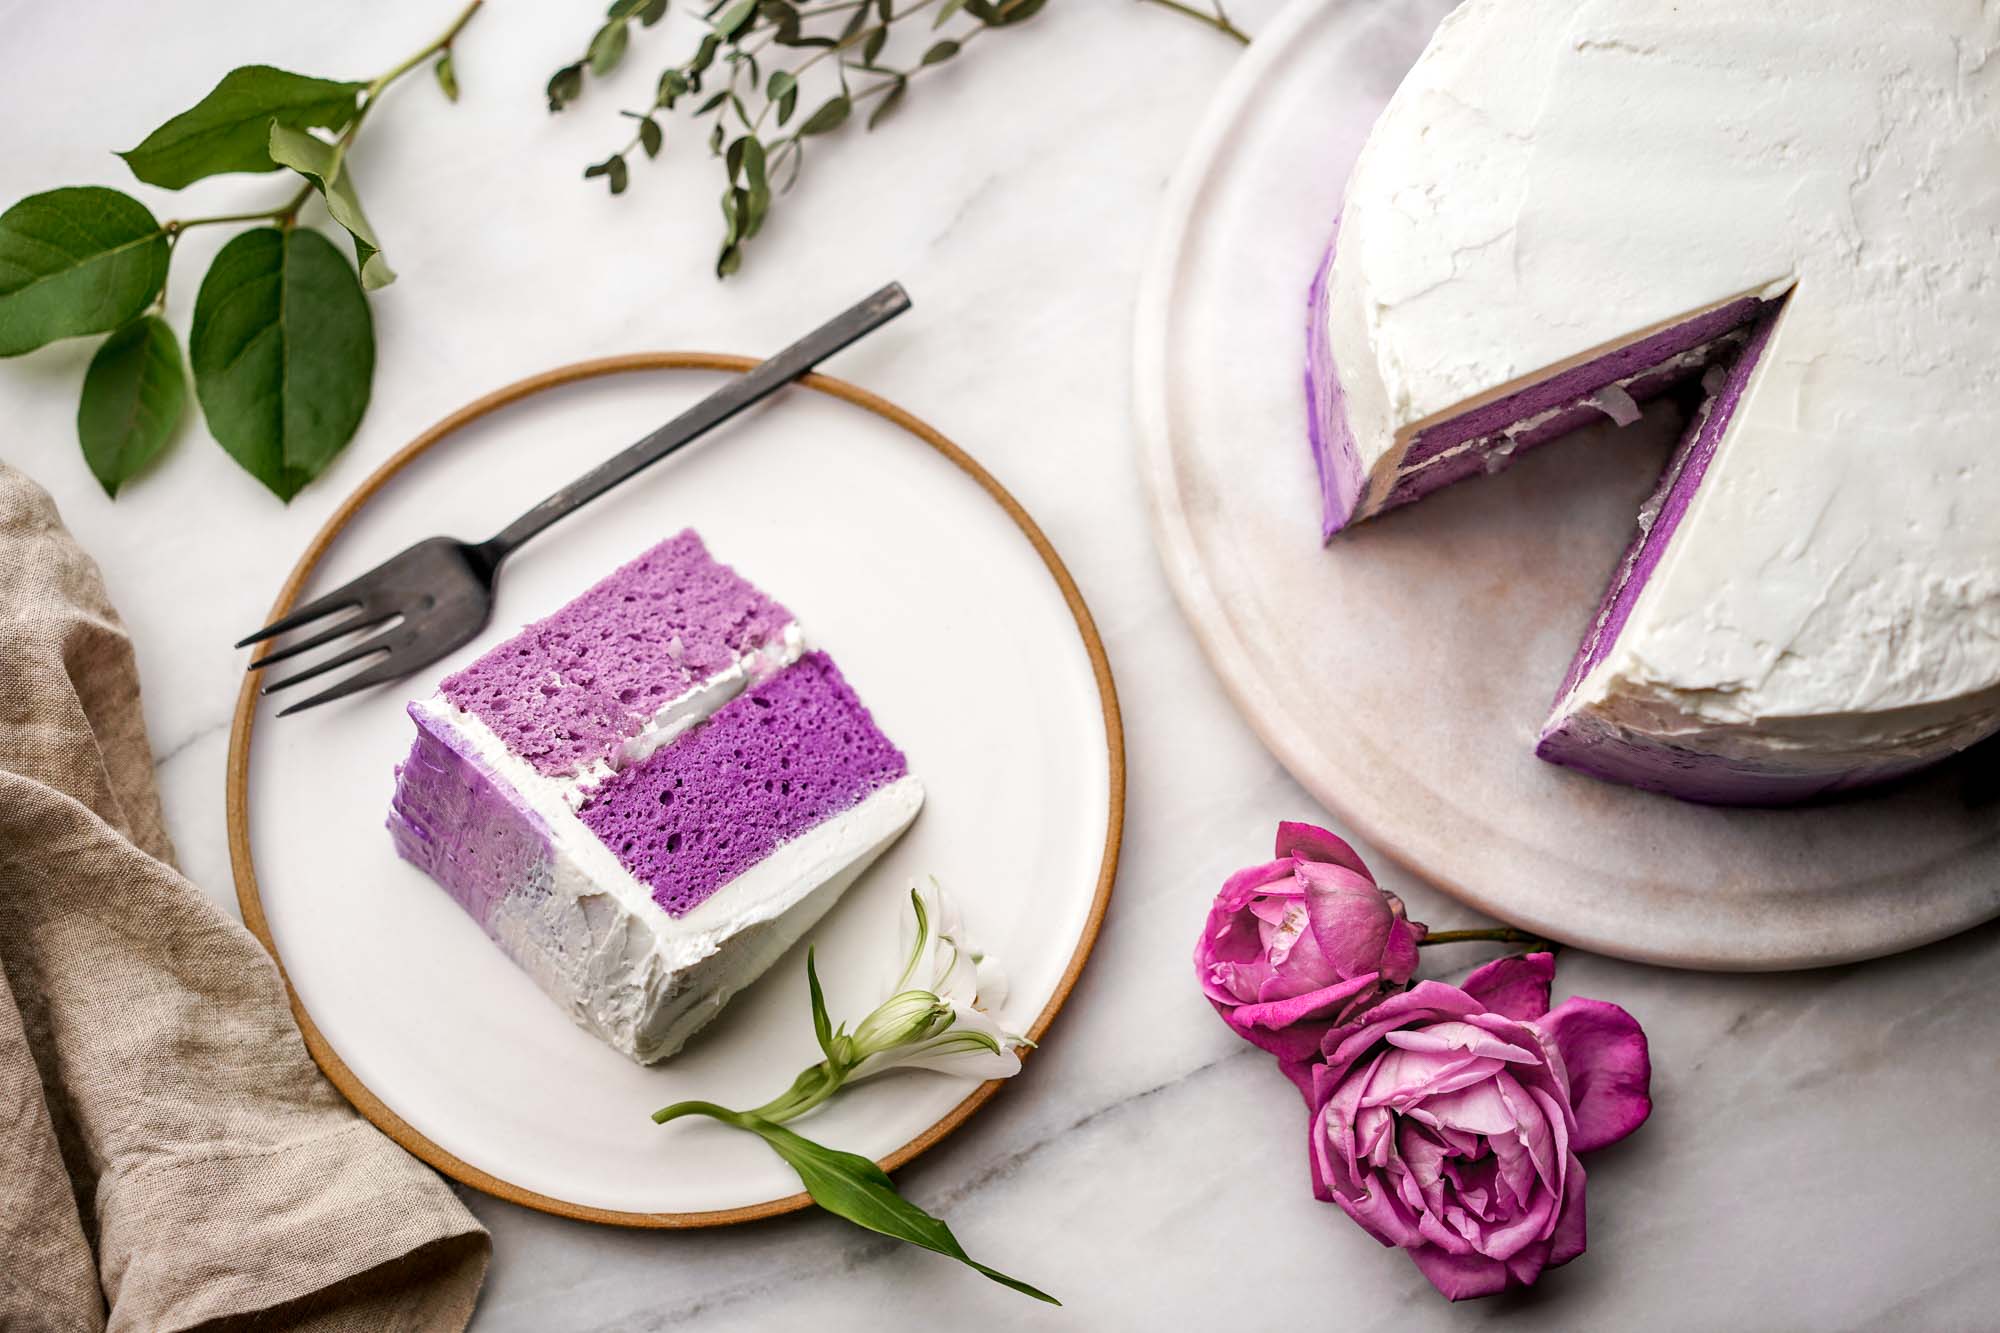 slice of purple ube cake